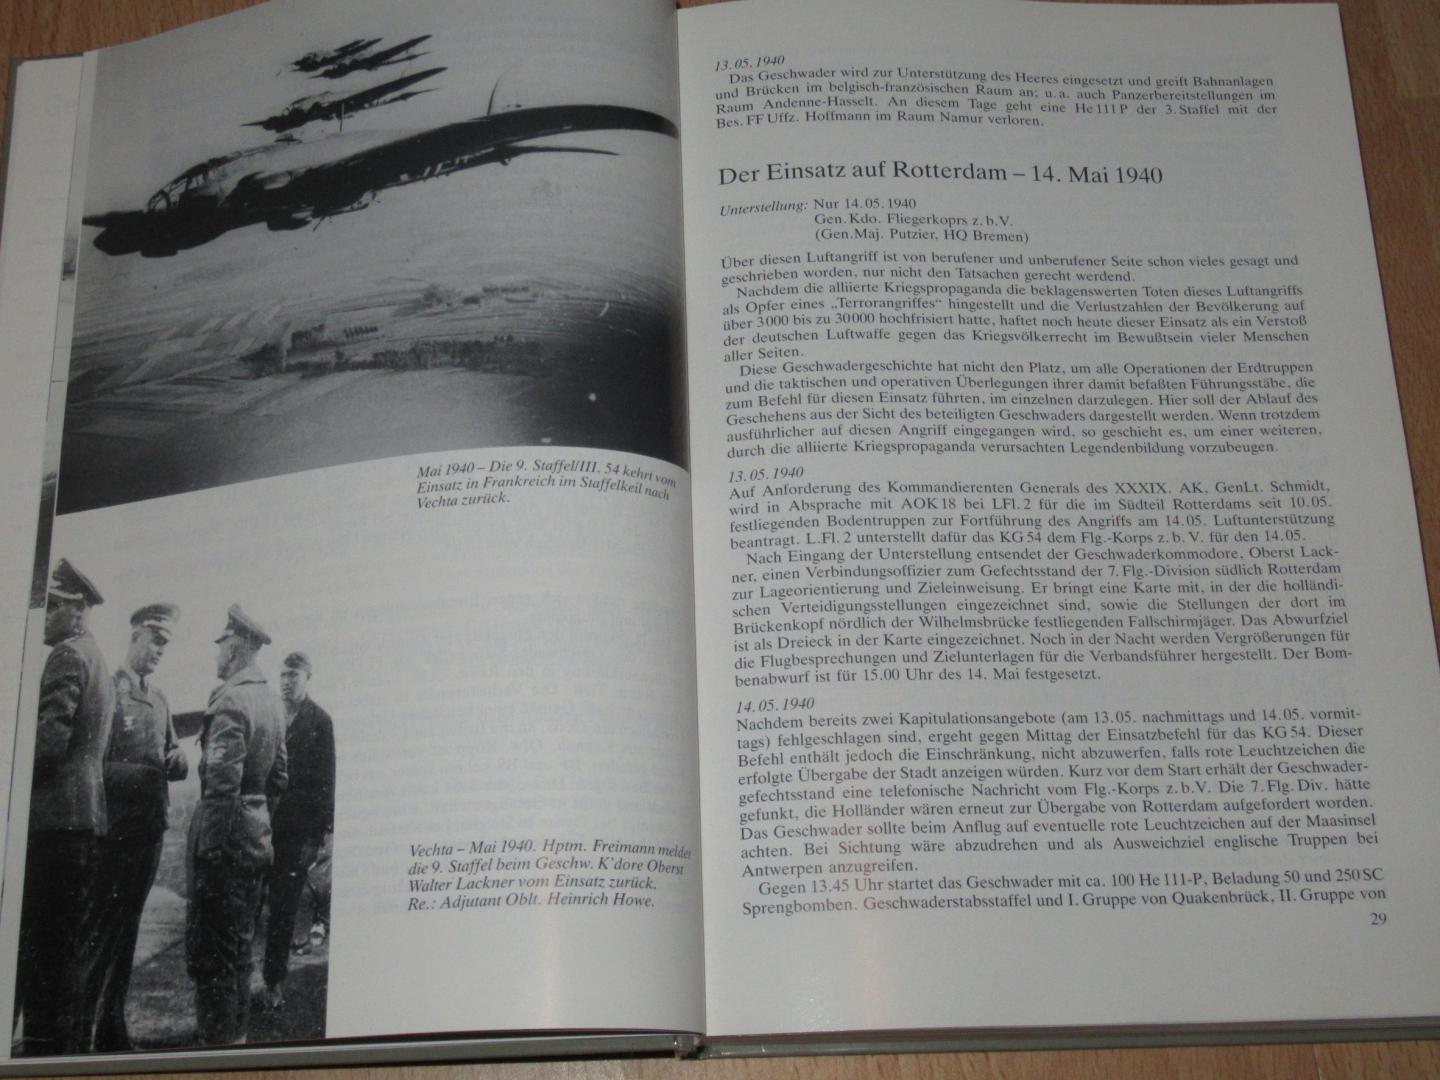 Radtke, Siegfried - Kampfgeschwader 54 - Von der Ju 52 zur Me 262. Eine Chronik nach Kriegstagebüchern, Dokumenten und Berichten 1935 - 1945